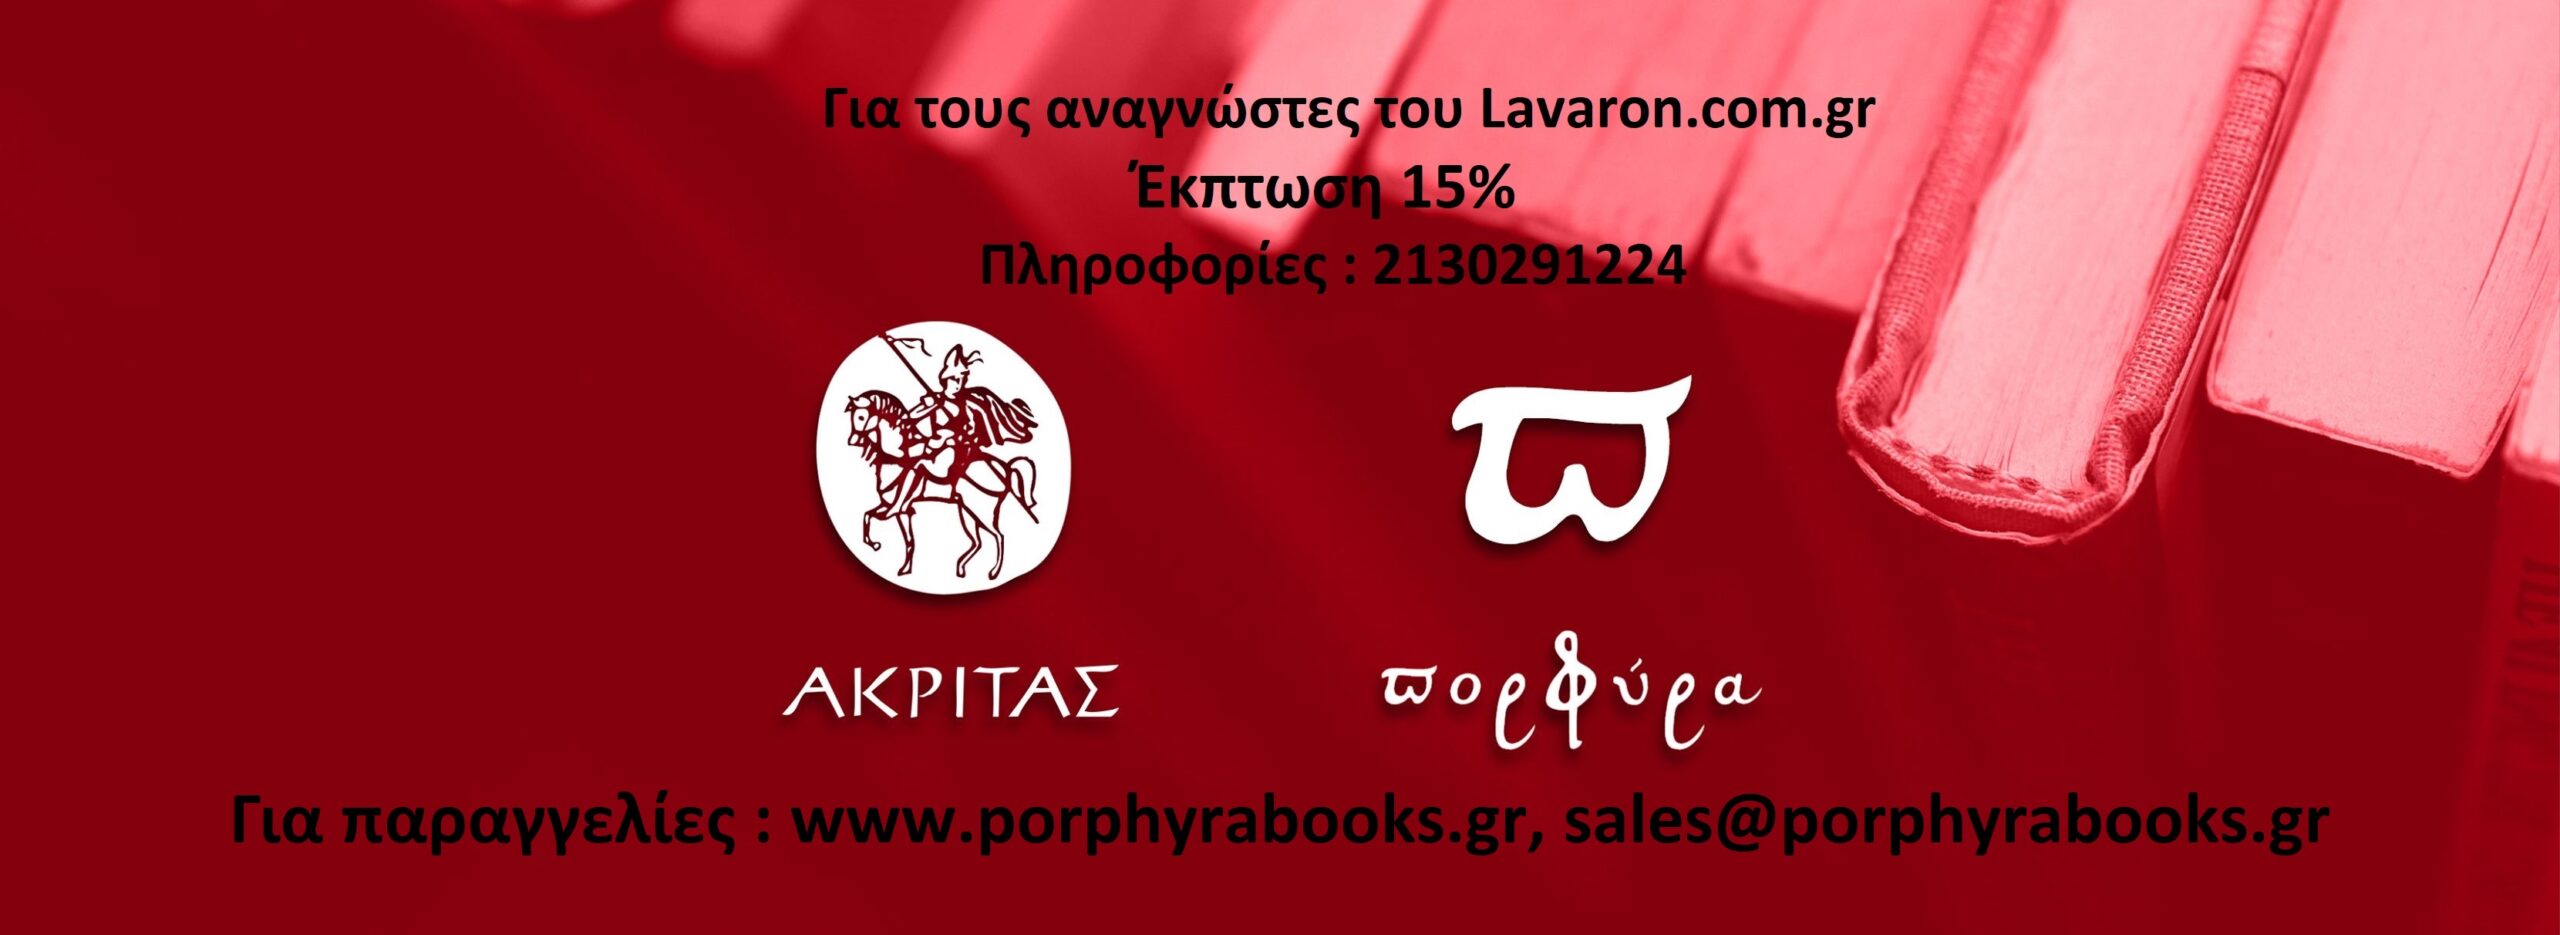 Για τον Μήνα Σεπτέμβριο 2021 και μόνο από το Ηλεκτρονικό τους Κατάστημα www.porphyrabooks.gr